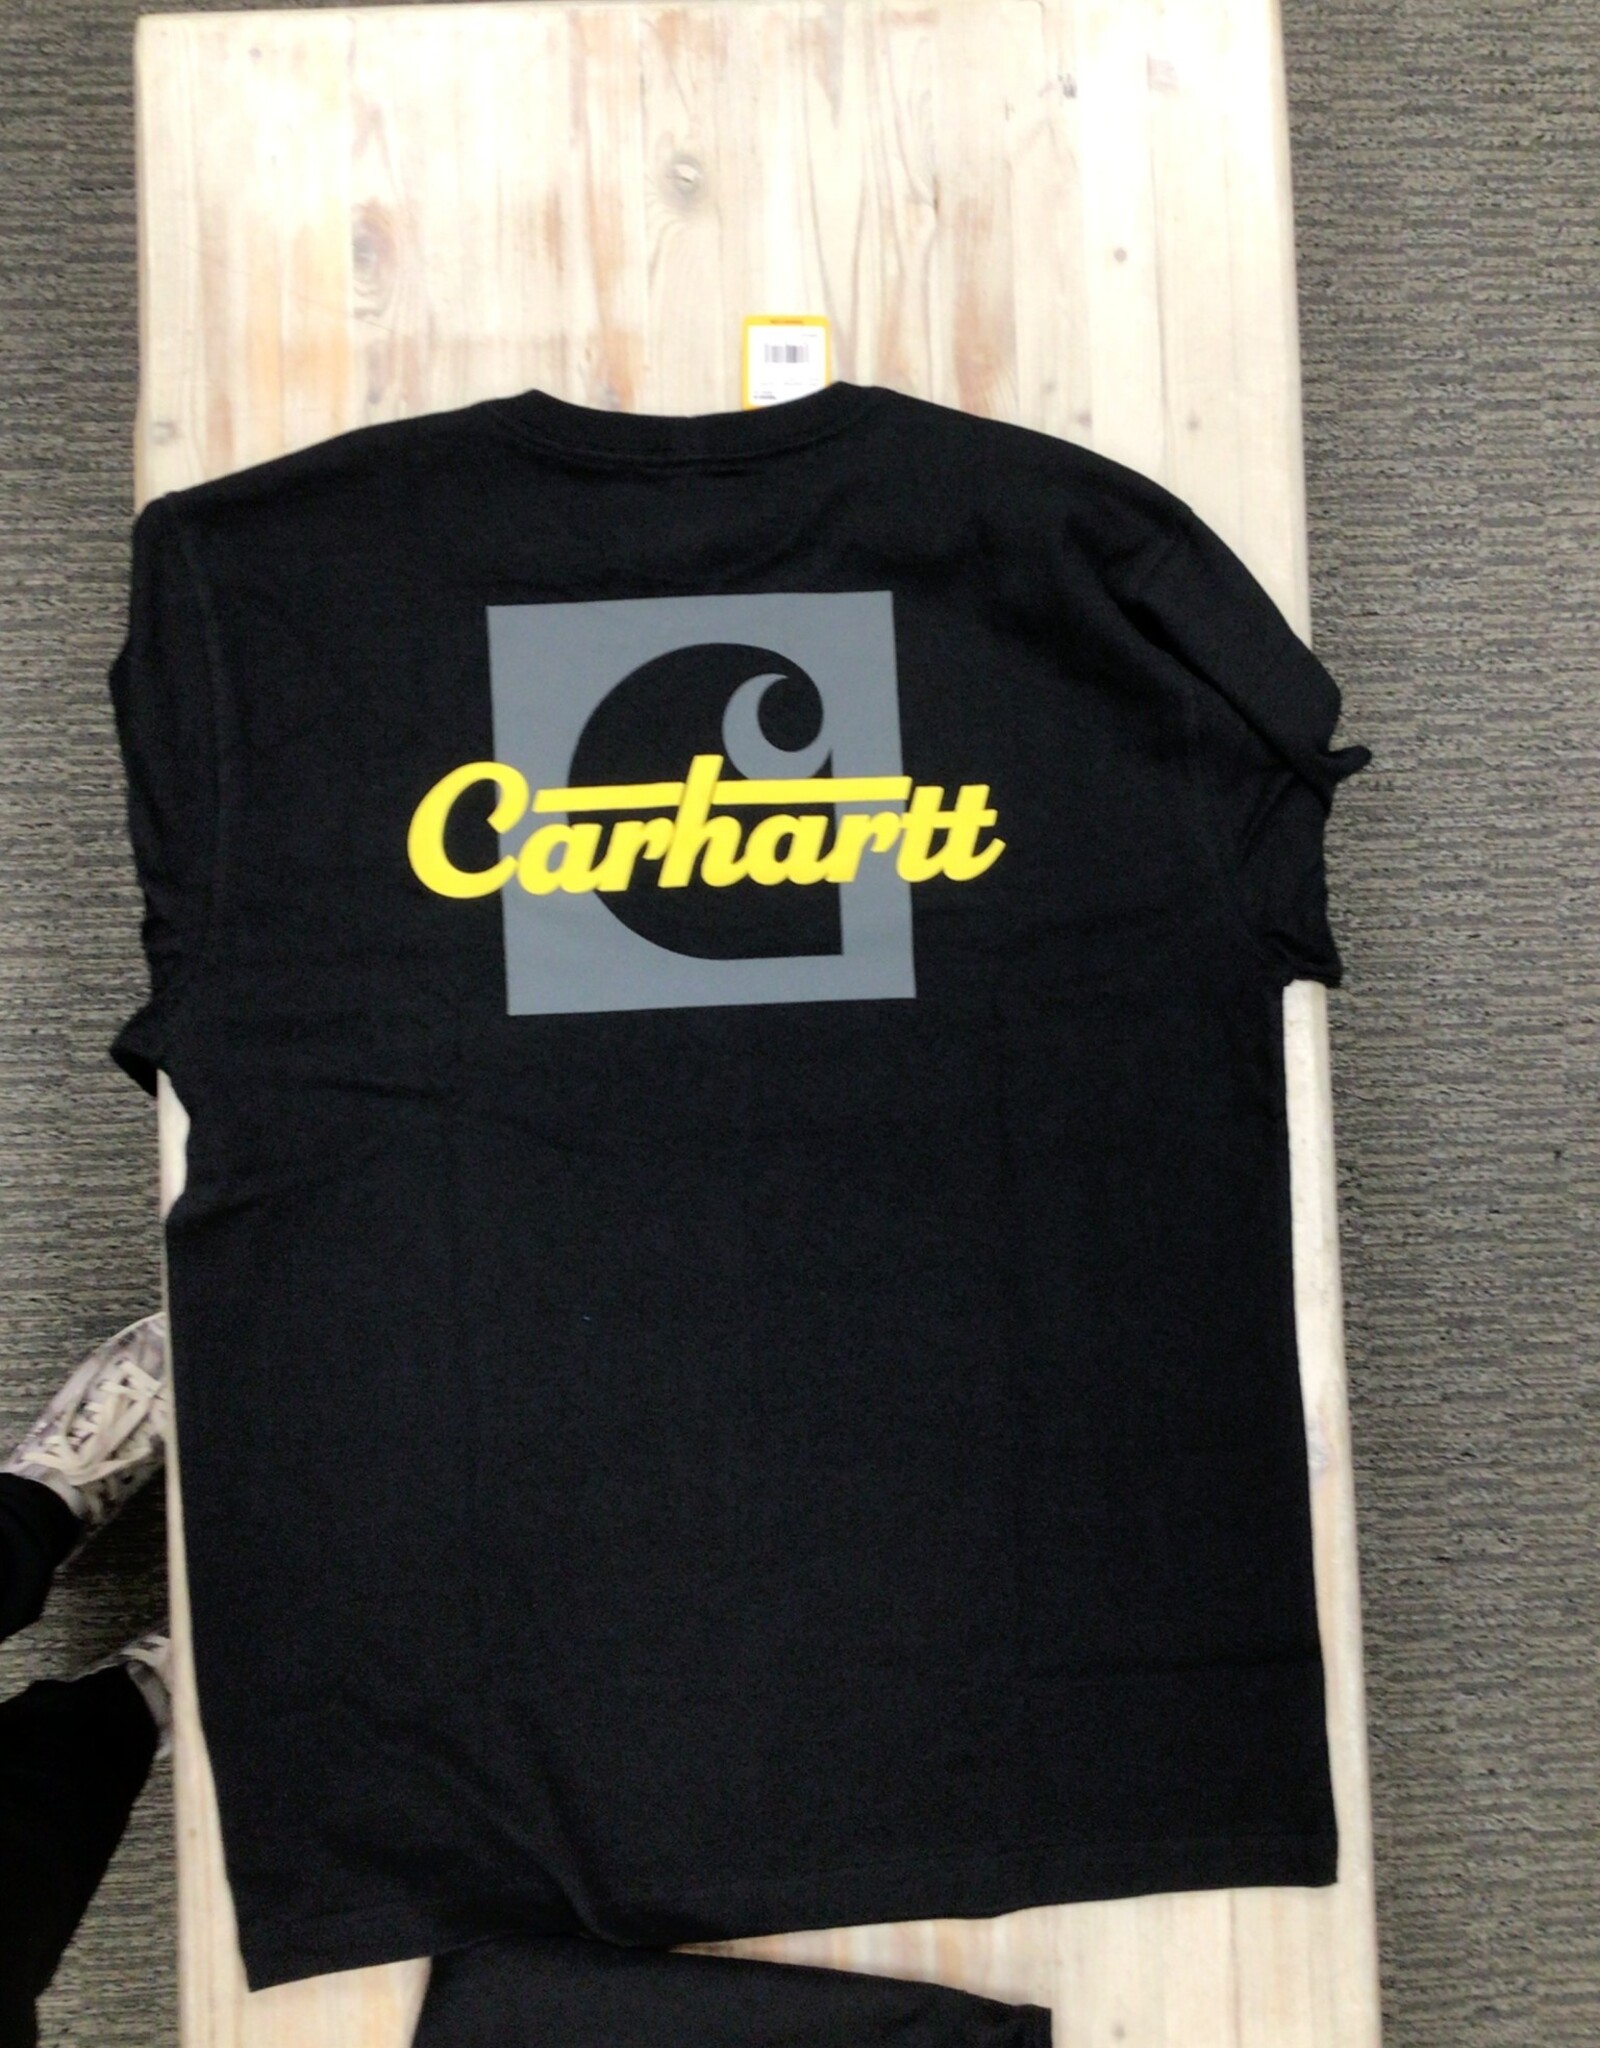 Carhartt Carhartt 106040 Loose Fit Heavyweight Long-Sleeve Pocket Script Graphic T-Shirt Men’s